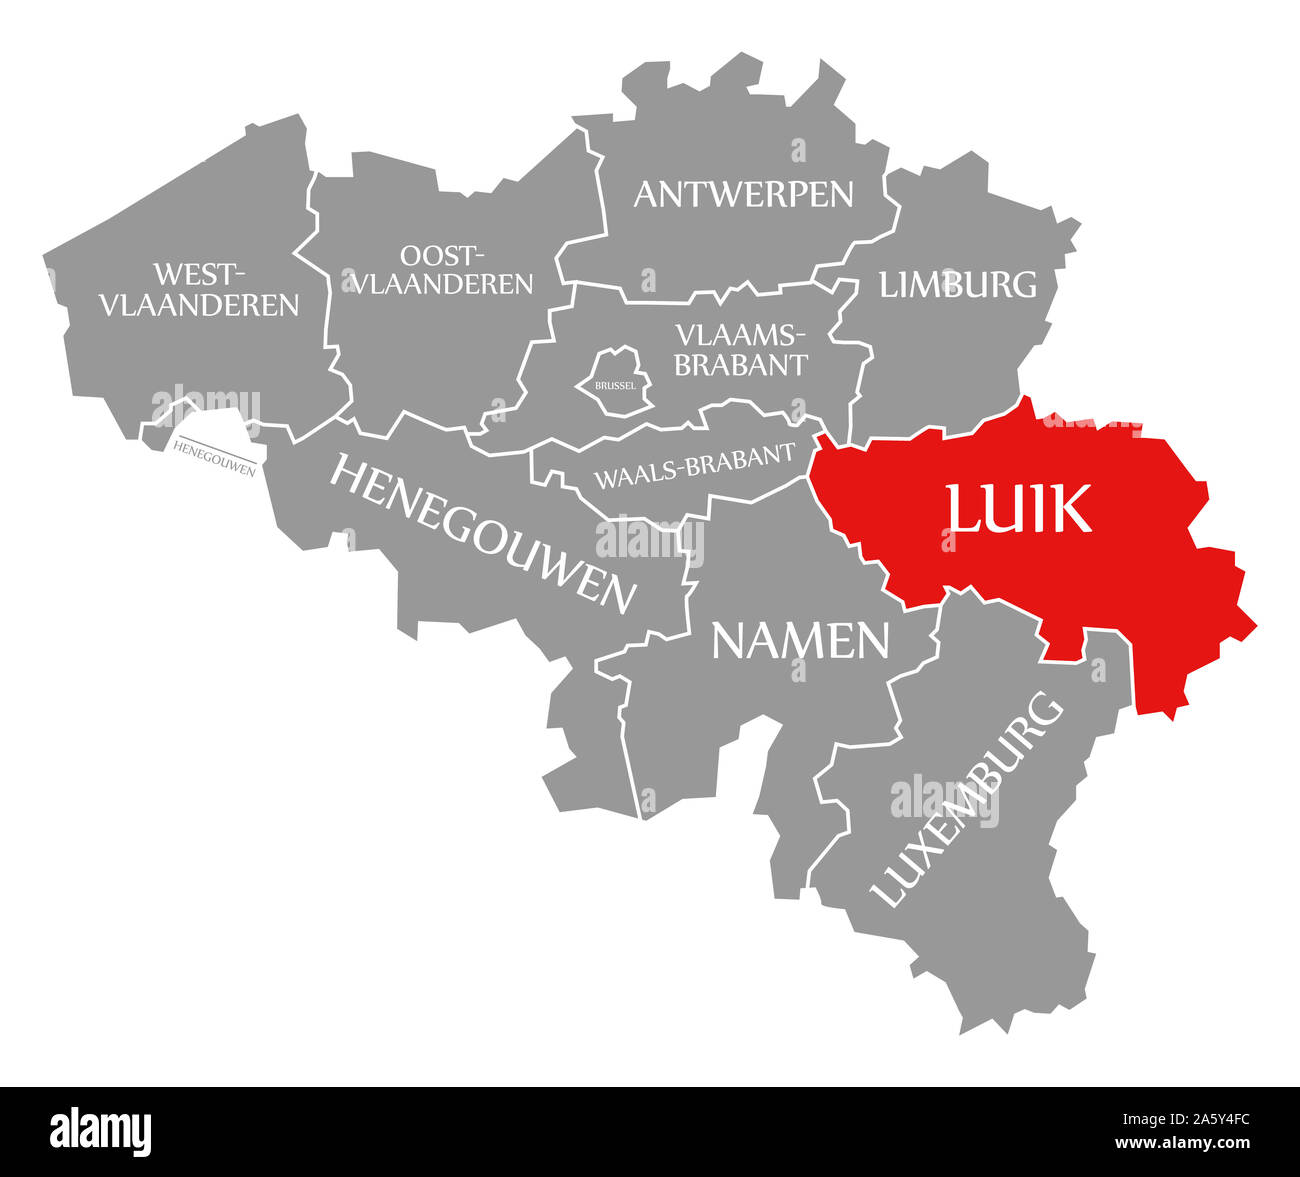 ROAD MAP LE LIEGE : maps of Le Liège 37460